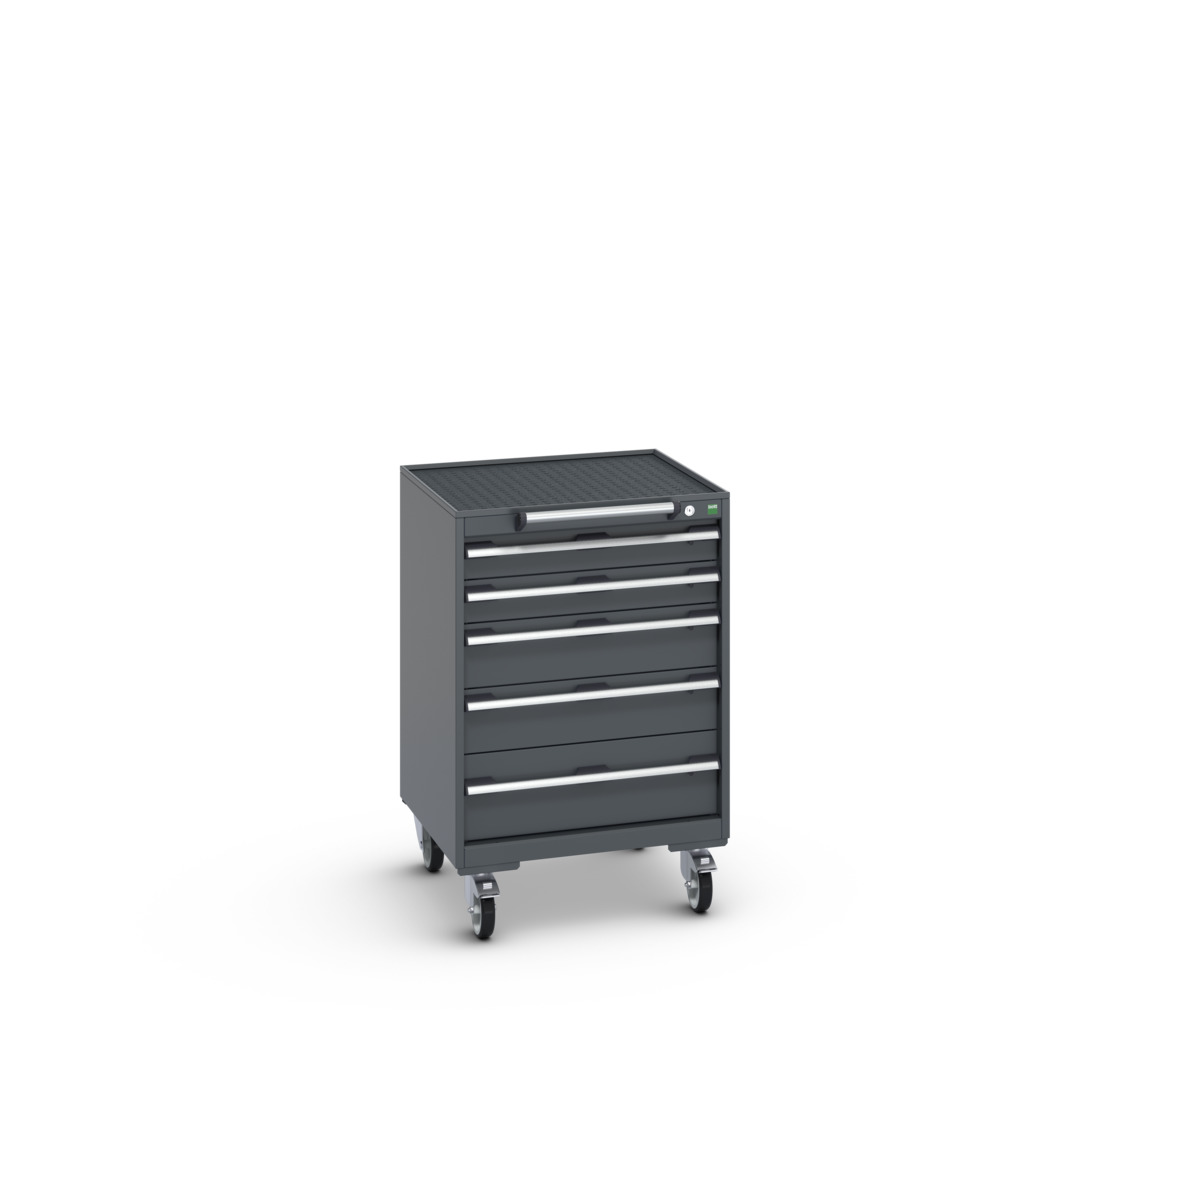 40402033.77V - cubio mobile cabinet